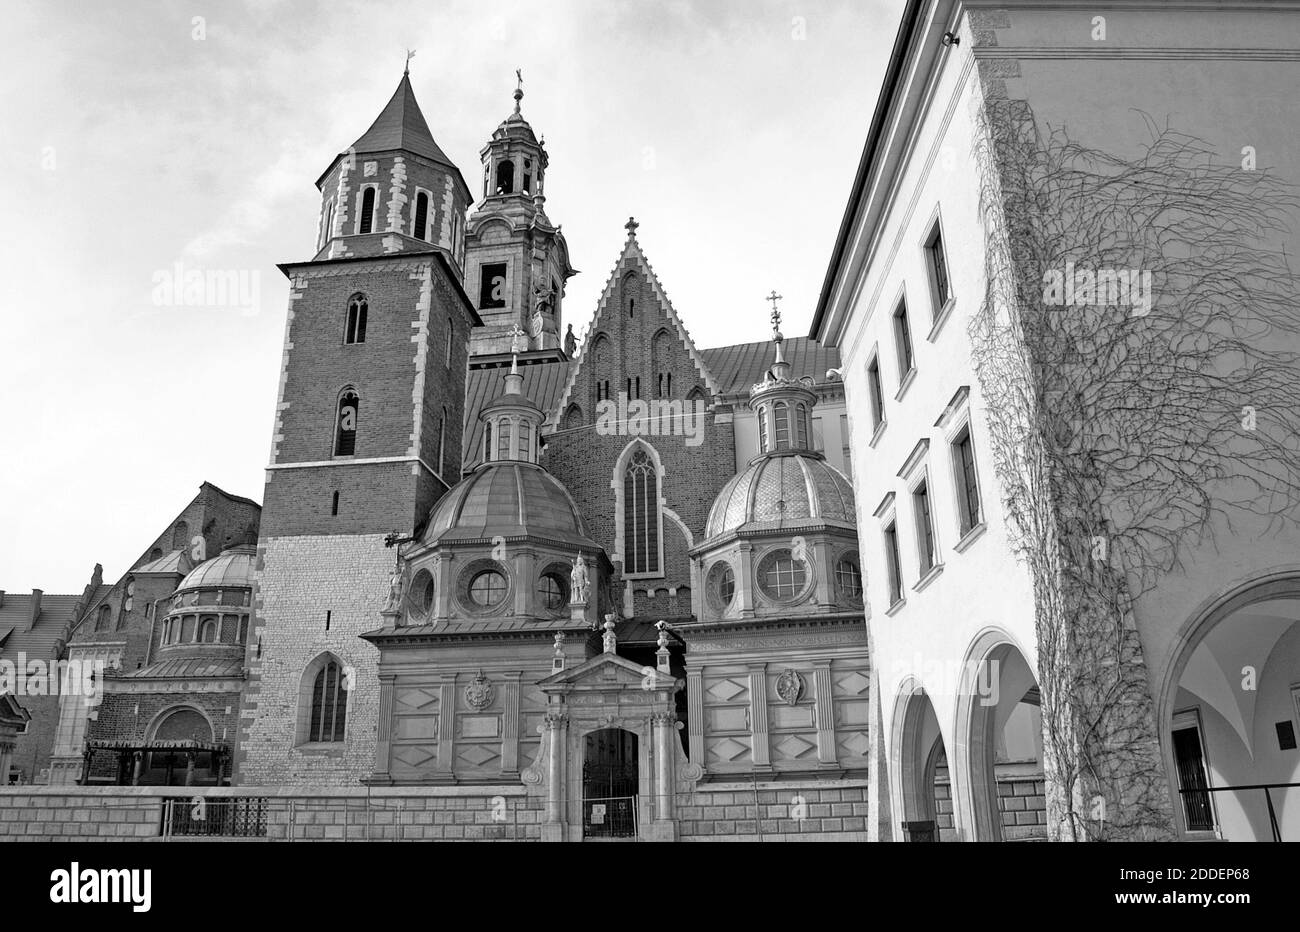 Das Königliche Schloss Wawel in der Altstadt von Krakau, Polen, ist ein Symbol der polnischen Staatlichkeit und ihres kulturellen Erbes. Das im 13. Und 14. Jahrhundert erbaute Schlossgelände umfasst die polnische Schatzkammer, die Königliche Kapelle, die Wawel-Kathedrale, die Sigismund-Kapelle und die königliche Residenz. Die Schlossarchitektur ist eine Mischung aus Romanik, Gotik, Renaissance und Frühbarock und trägt zur UNESCO-Welterbestätte im Jahr 1978 bei. Stockfoto